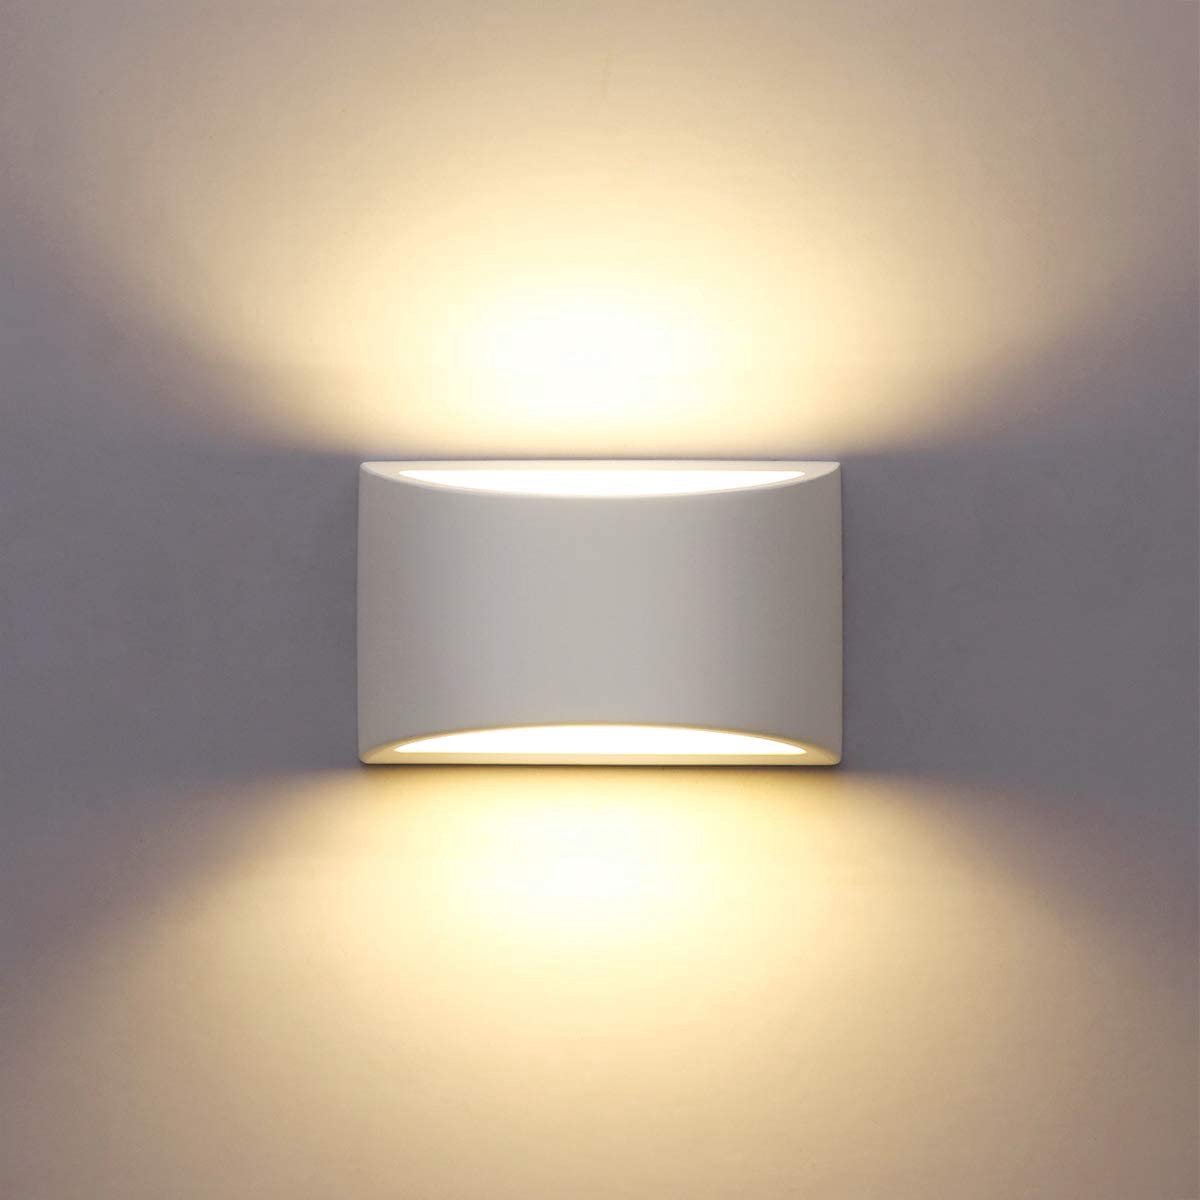 Flightmode- Led-wandlamp voor binnen, 7 W, wit, gipslicht, modern design, wandlamp, led licht up en down, wandlicht, spotlicht, warm wit voor badkamer, woonkamer, slaapkamer, hal (G9 LED-lamp inbegrepen)